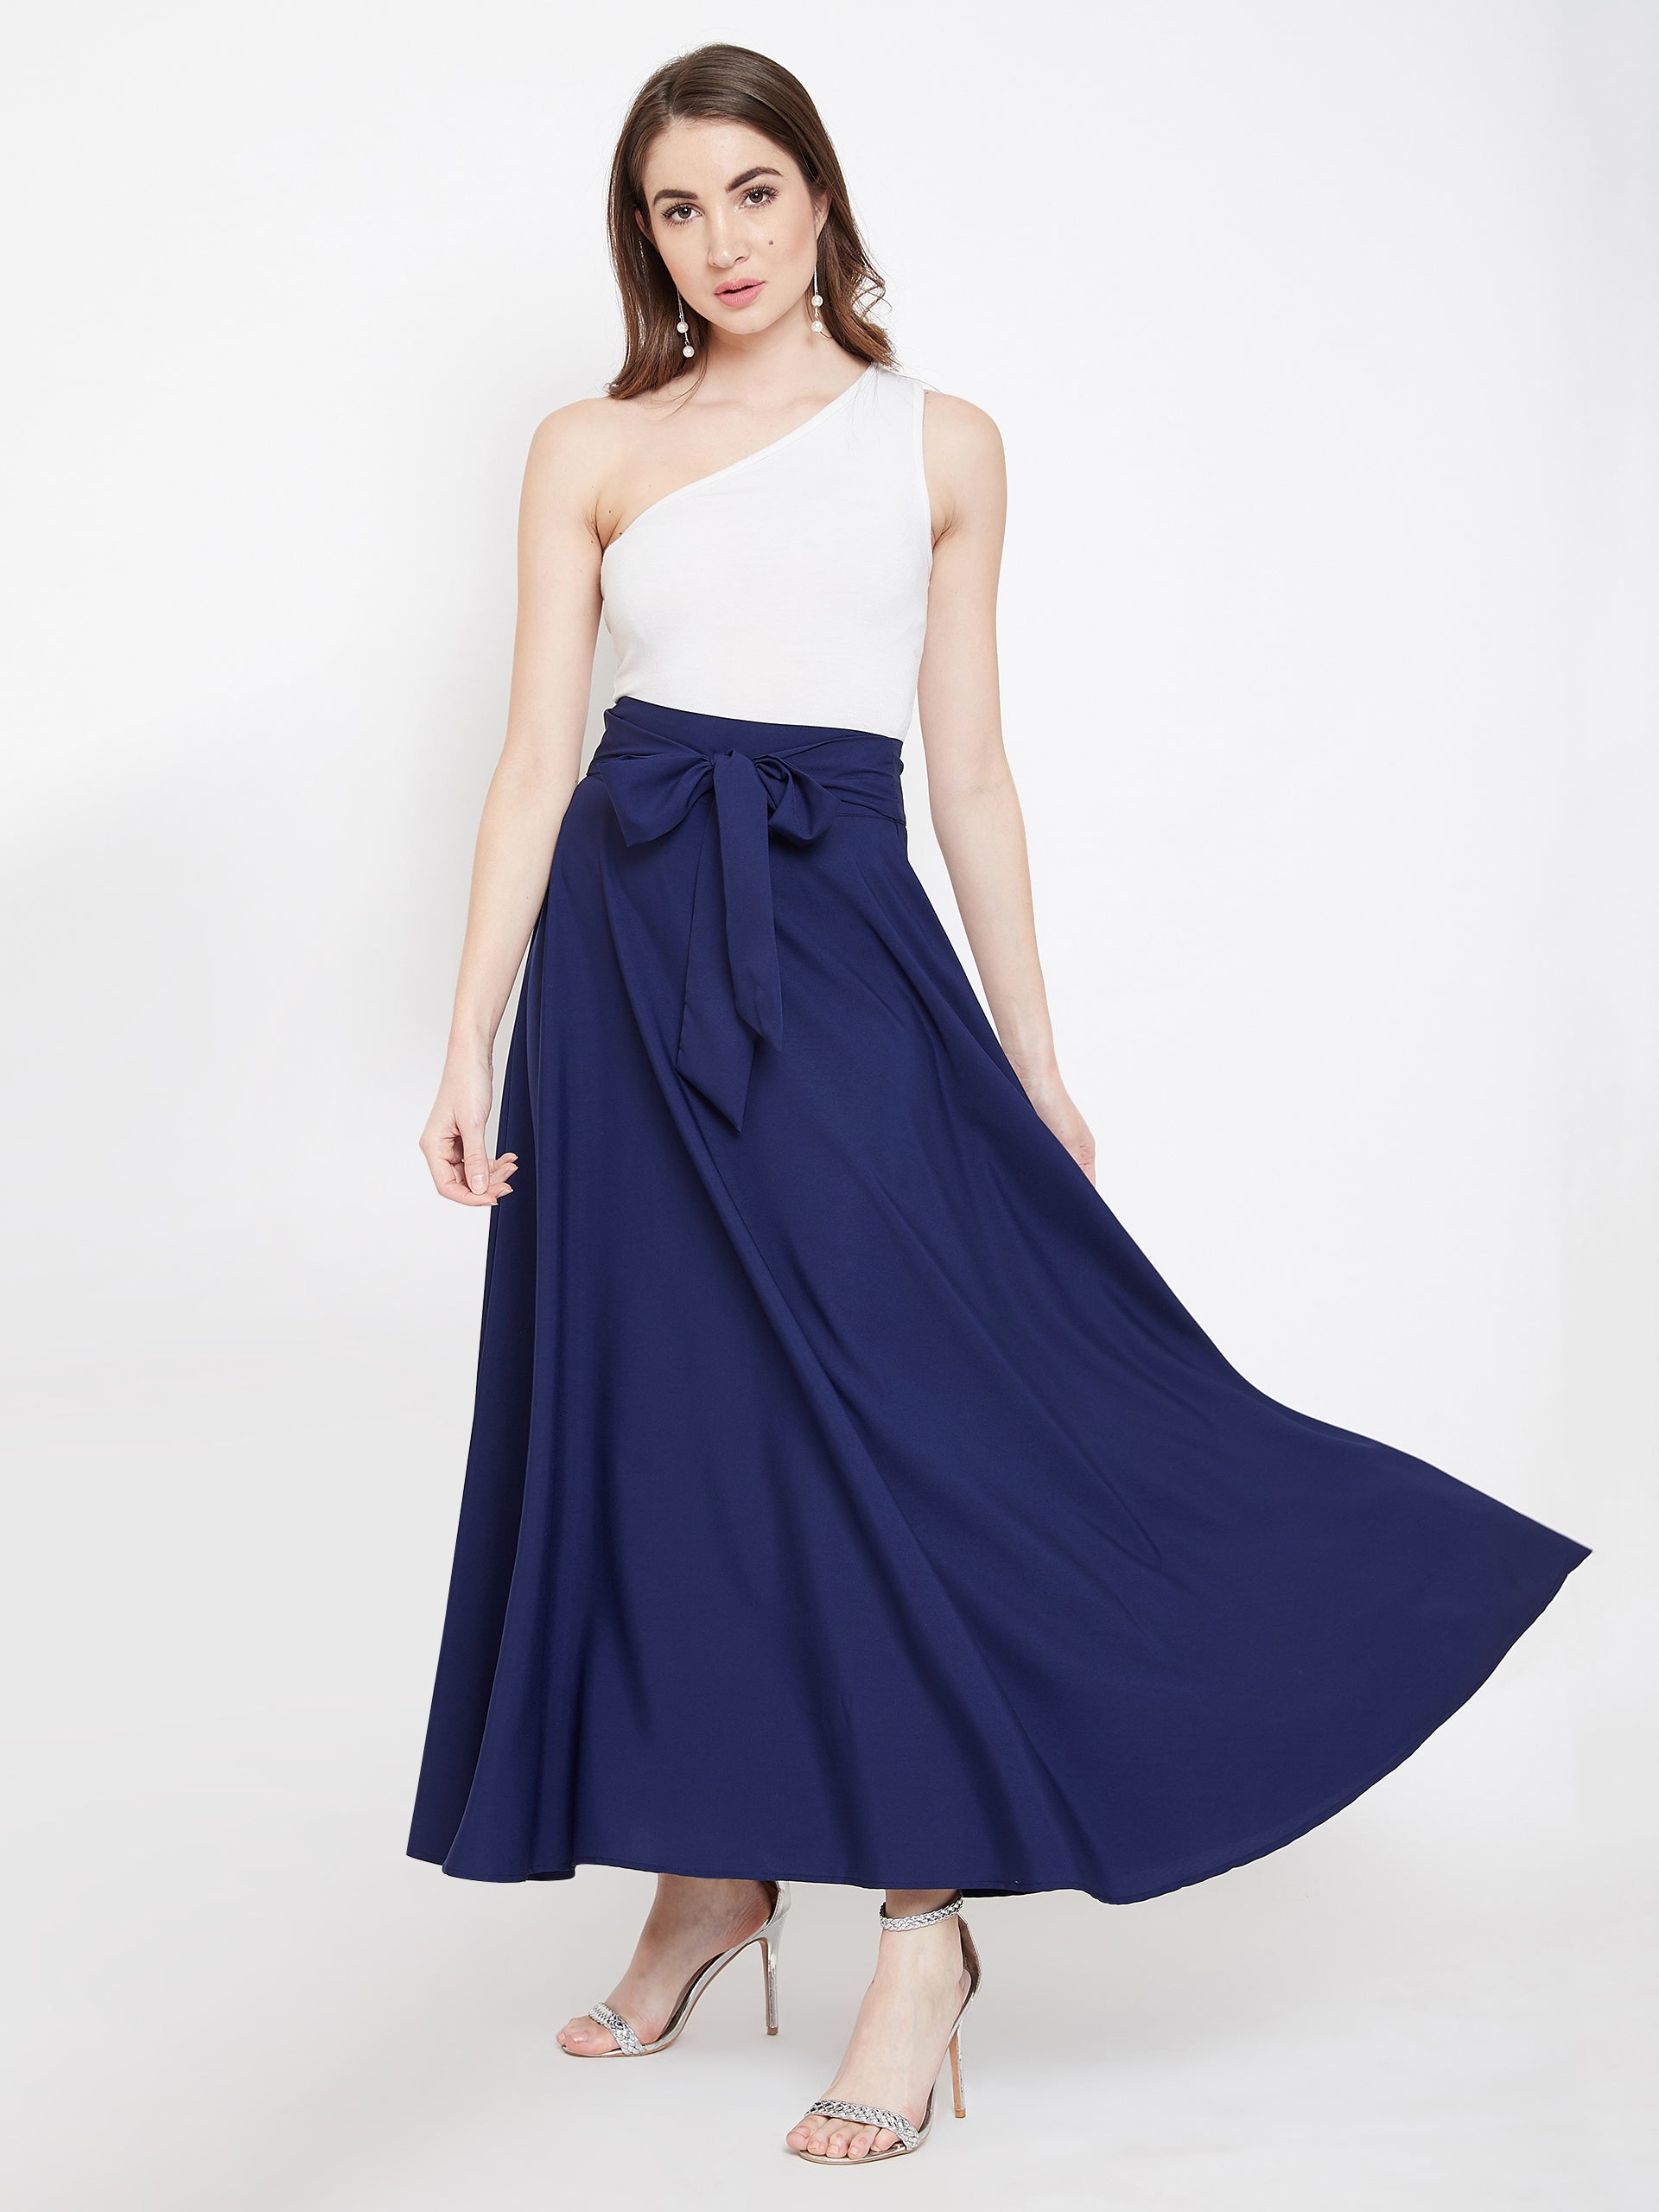 Berrylush Women Solid Navy Blue Bow-Tie High-Waist Flared Maxi Skirt